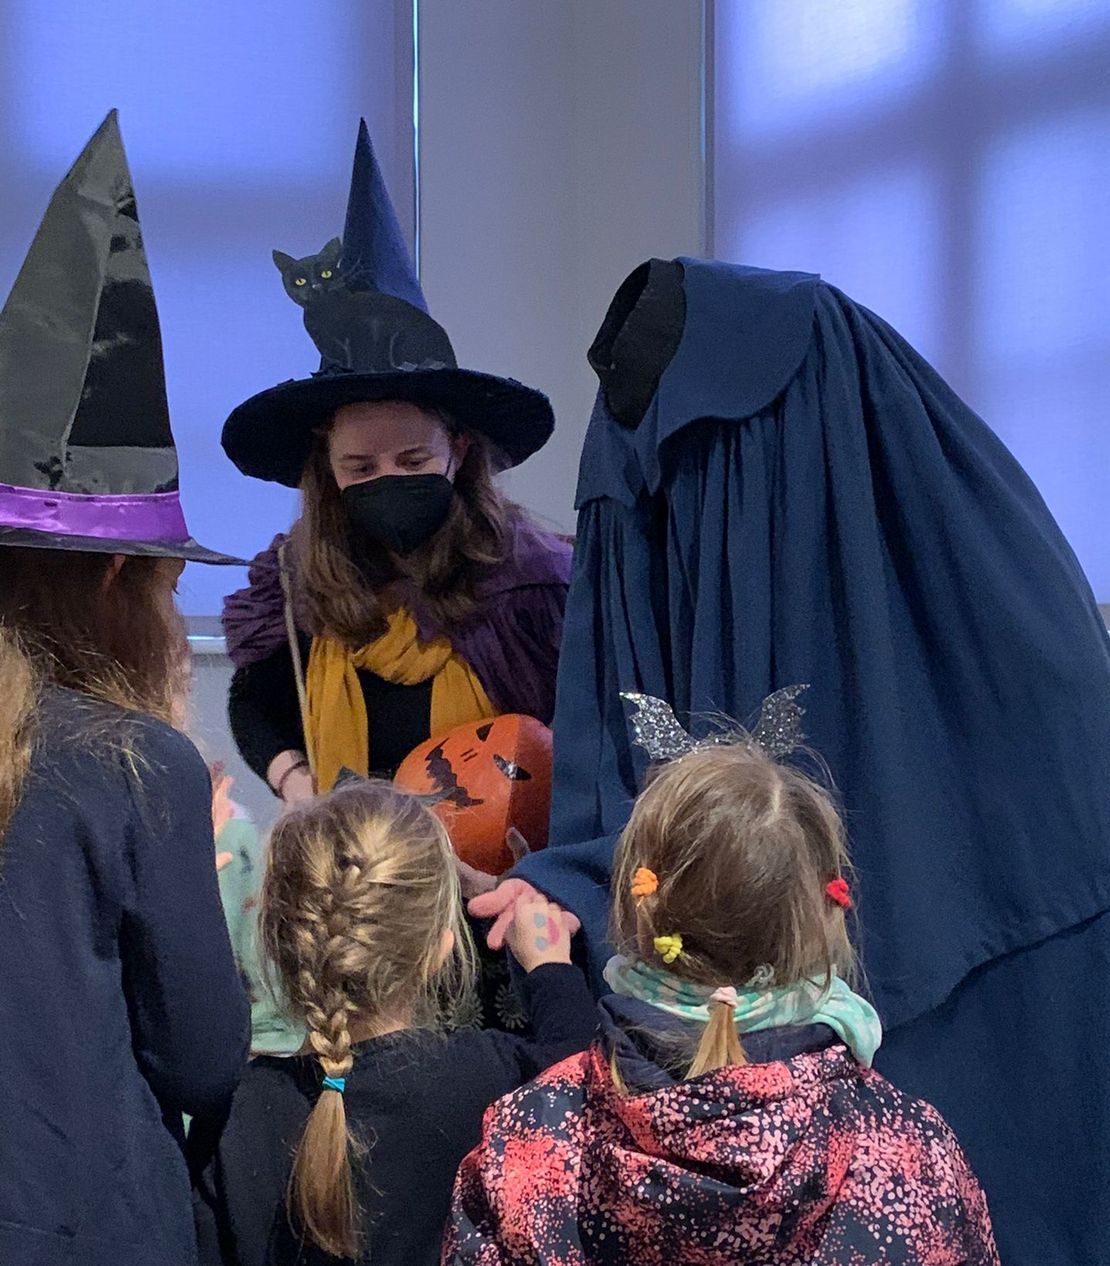 Die Kinder bekommen von einer als kopflosen Reiter verkleideten Person Süßigkeiten. Daneben steht eine als Hexe verkleidete Museumsführerin.